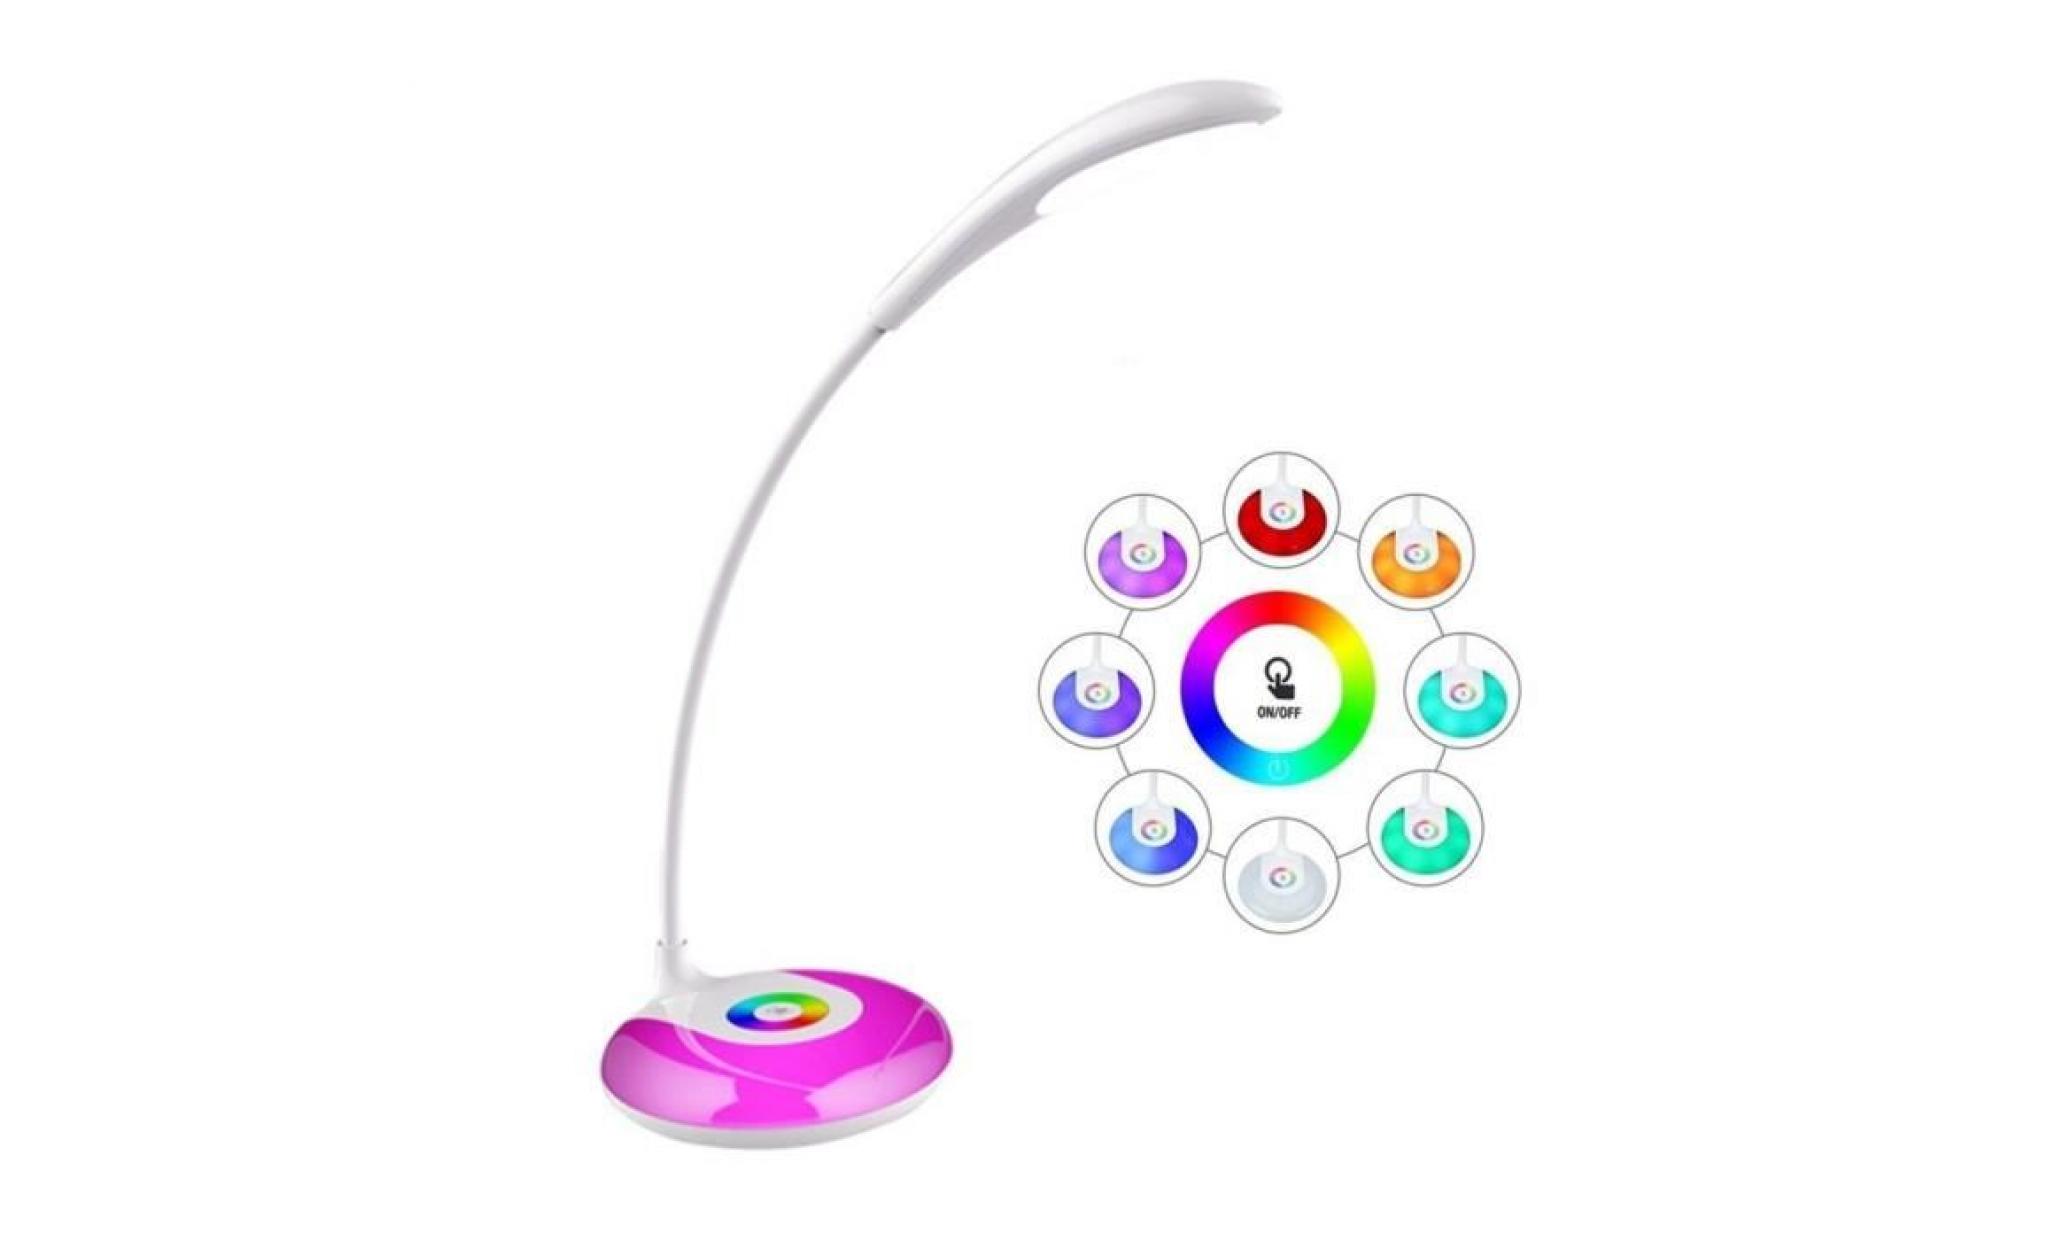 lampe de bureau led 3w rgb lampe à poser multicolore lampe de table sans fil 3 niveau de luminosité livre table ajustable,charge usb